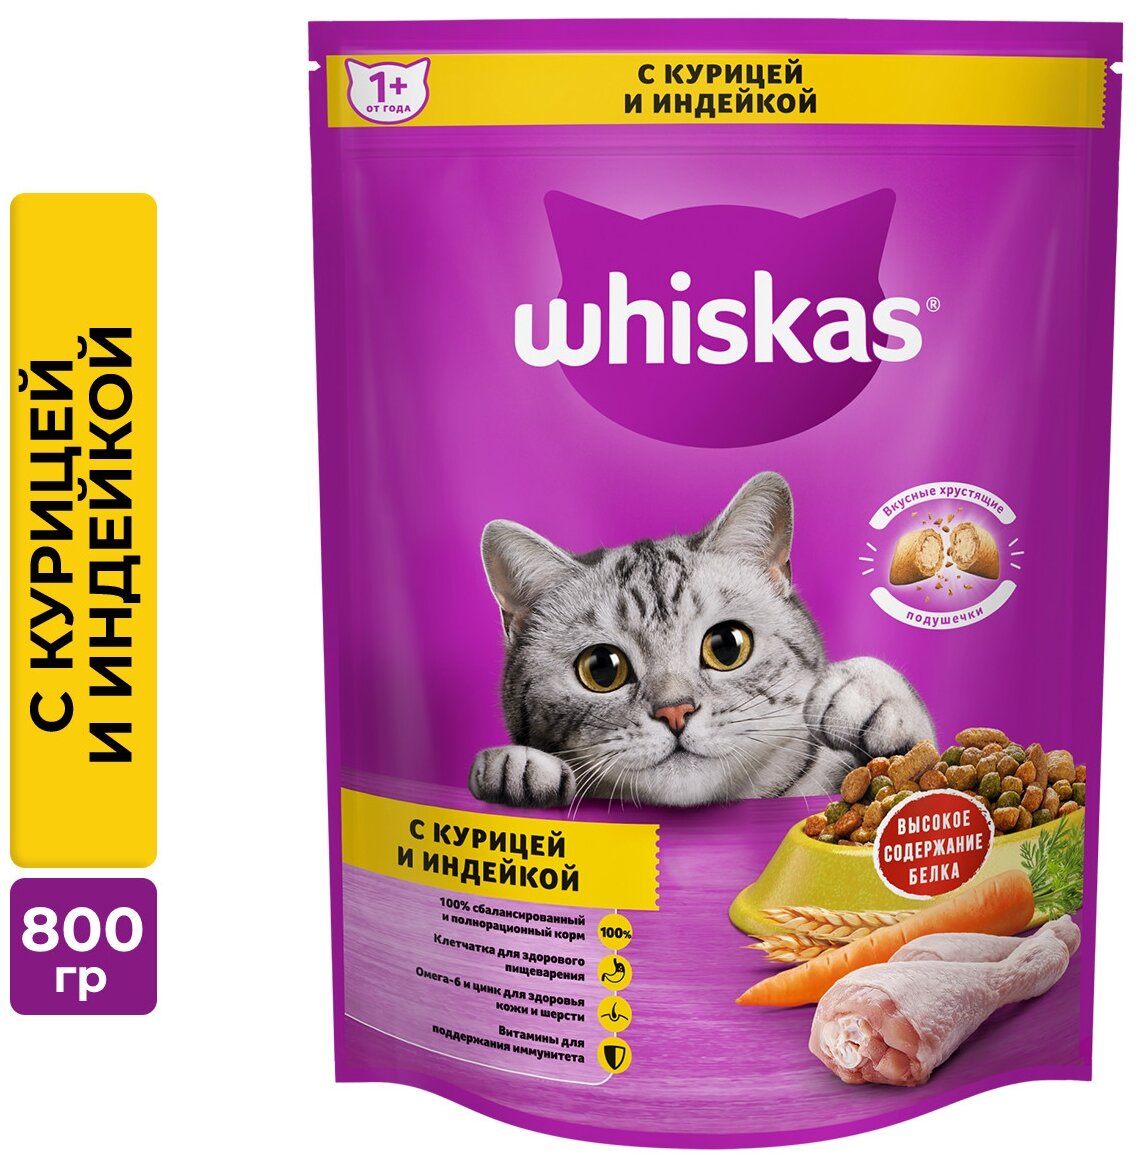 Whiskas Вкусные подушечки для кошек Курица и индейка, 800 г.